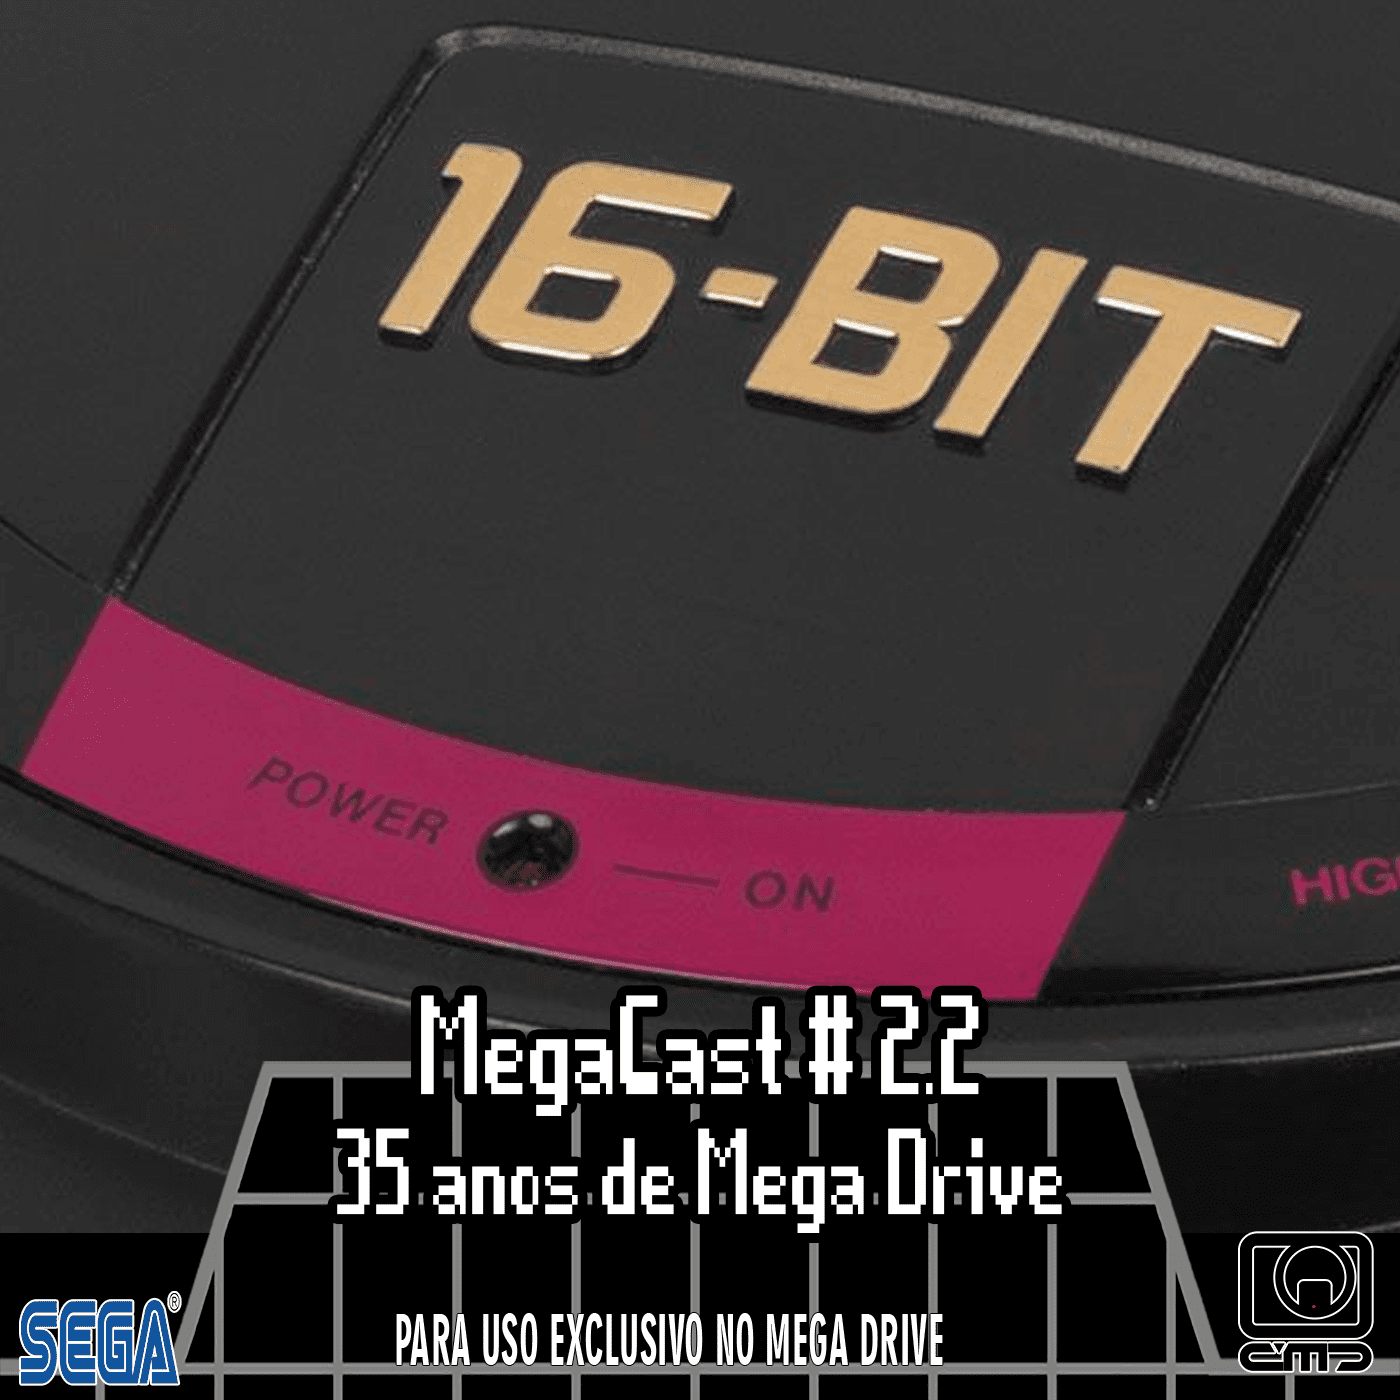 MegaCast # 2.2 – 35 Anos de Mega Drive